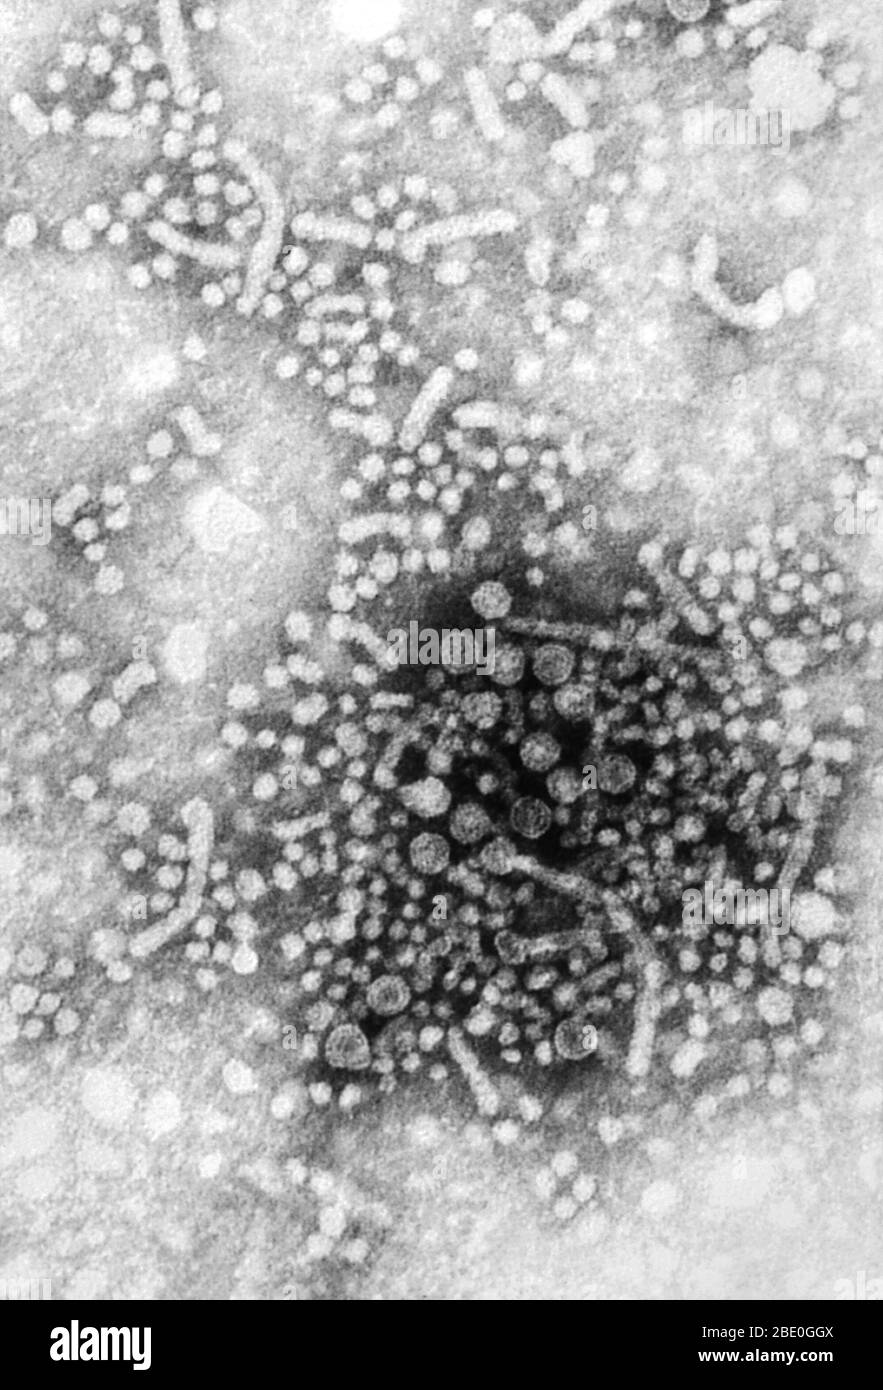 Micrografía electrónica de transmisión con tinción negativa (TEM) de numerosos viriones del virus de la hepatitis B (VHB), también conocidos como partículas de Dane. El VHB contiene un genoma de ADN y es miembro de la familia de virus conocidos como Hepadnaviridae. Es la causa de una enfermedad grave que ataca el hígado y una infección que puede durar toda la vida, conocida como cirrosis (cicatrización) del hígado, cáncer de hígado, insuficiencia hepática y muerte. Foto de stock